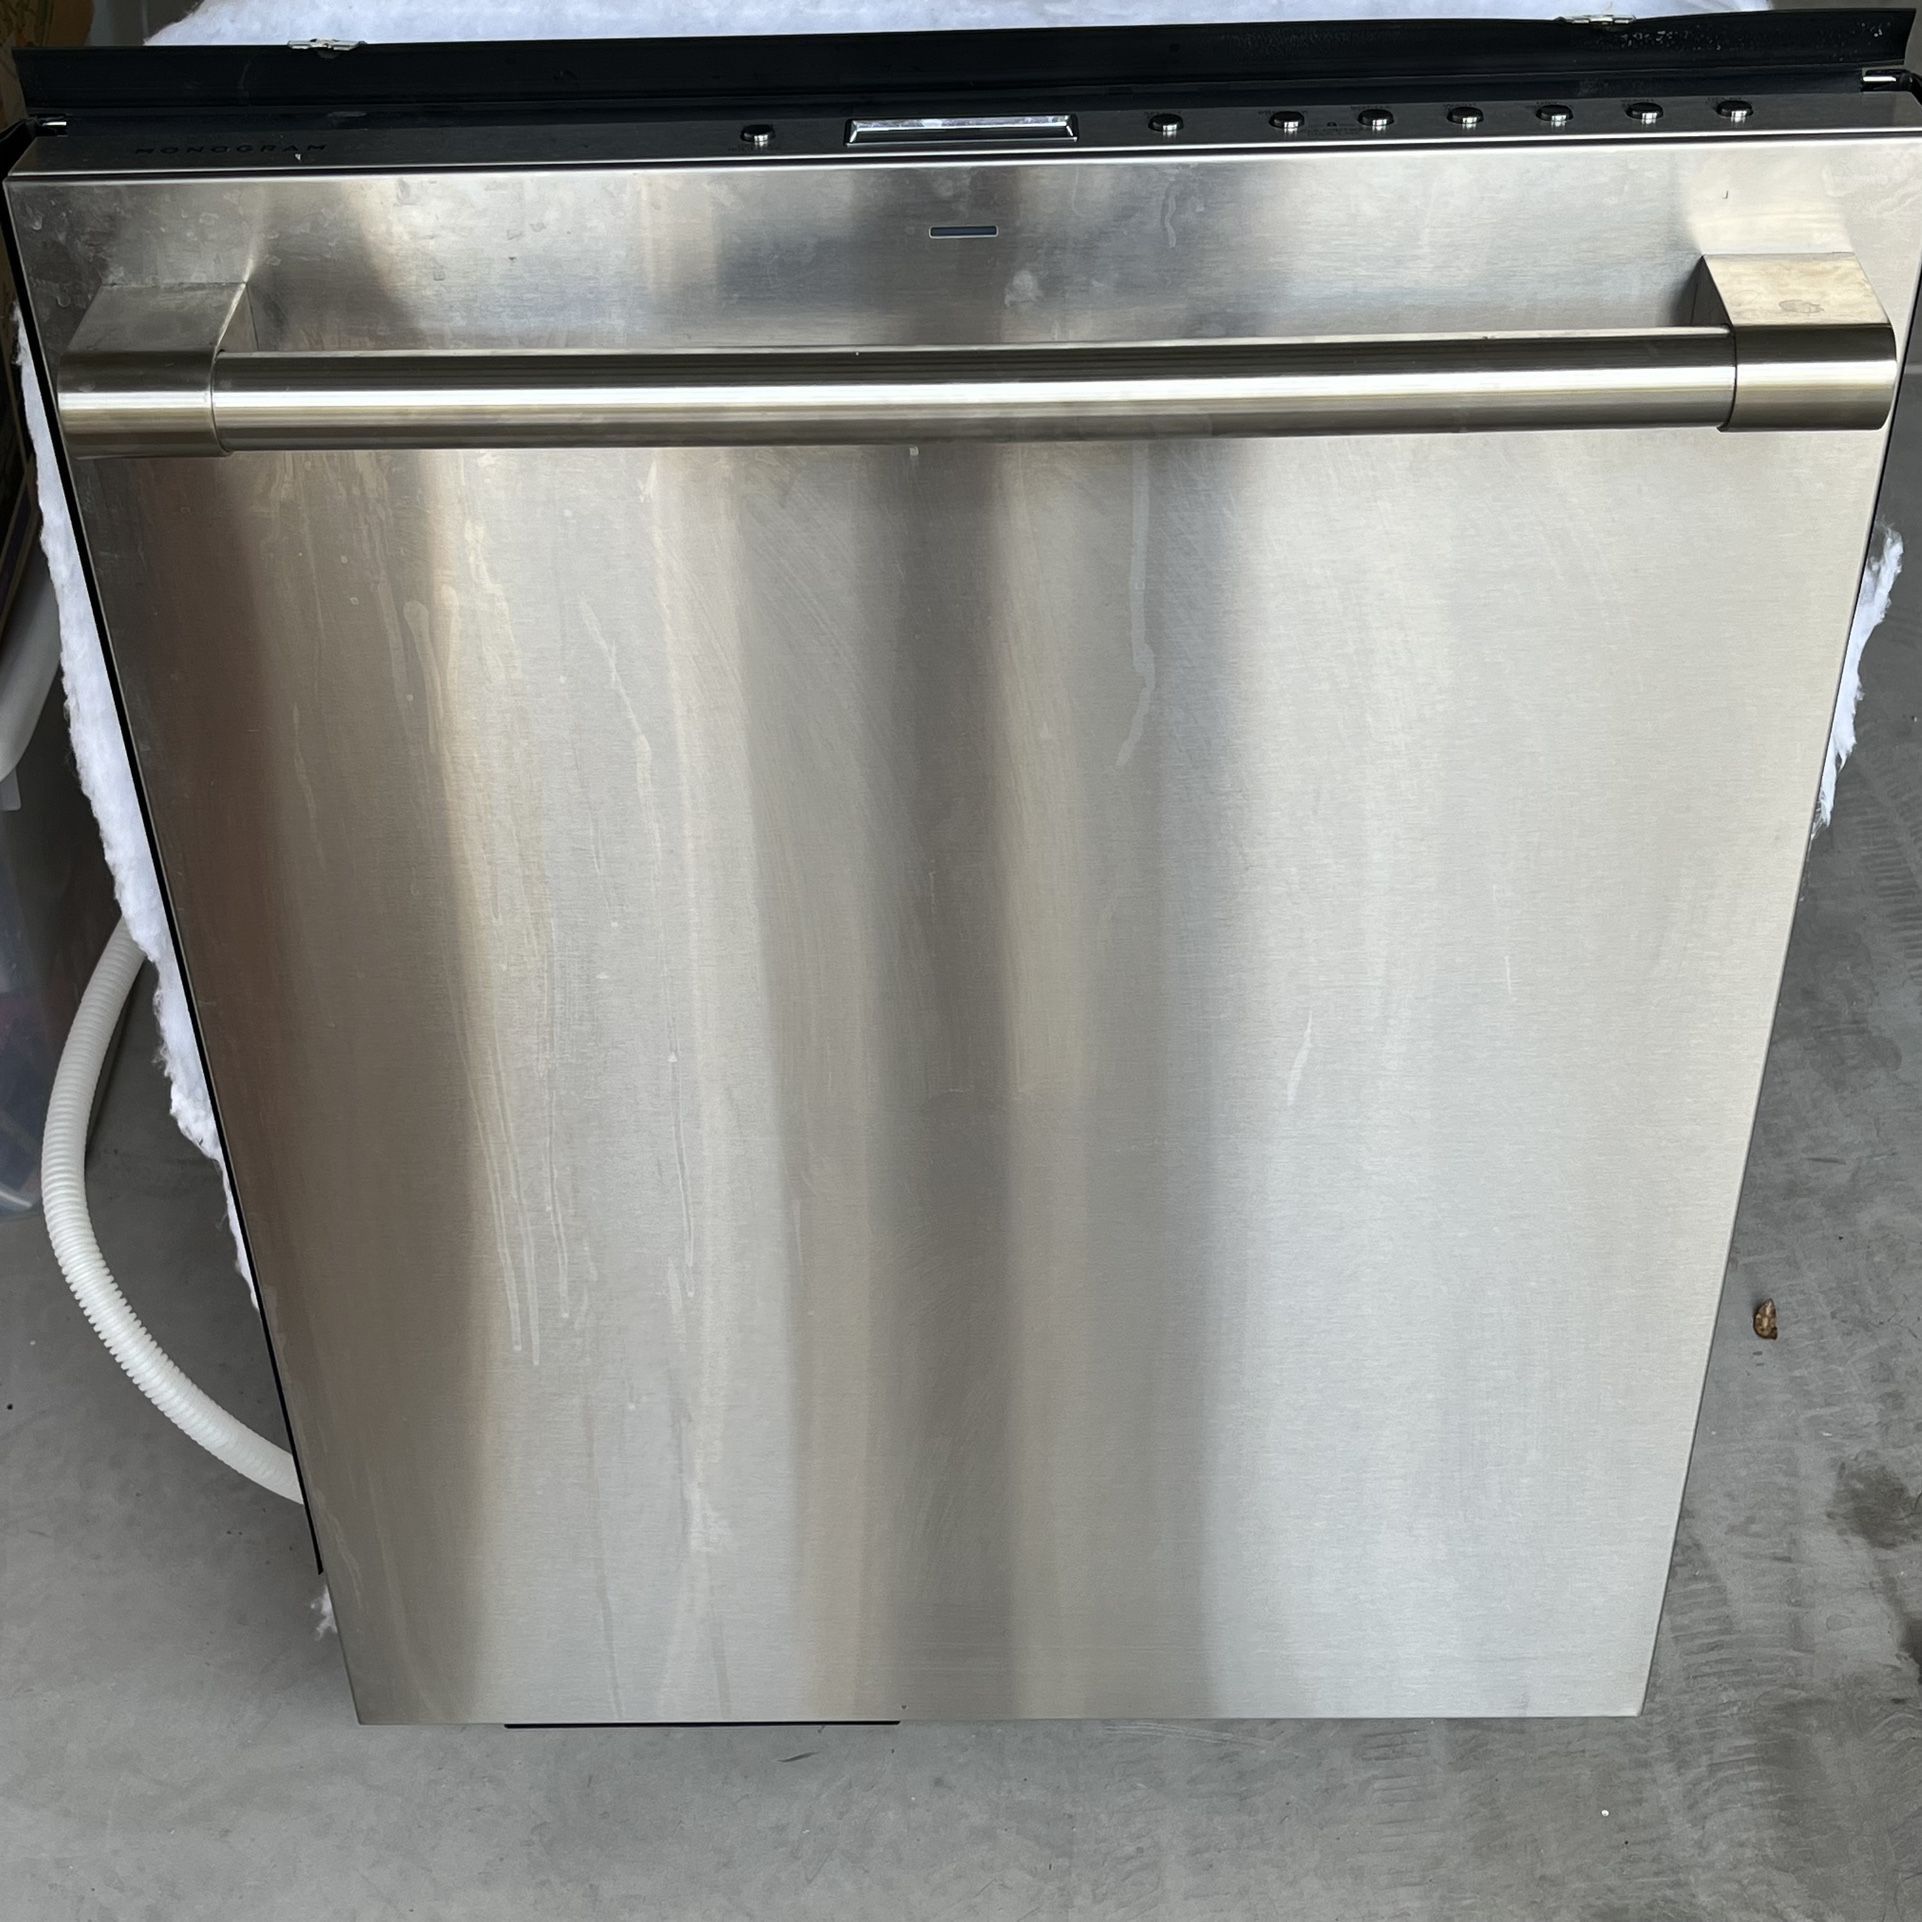 GE Monogram Stainless Steel Dishwasher